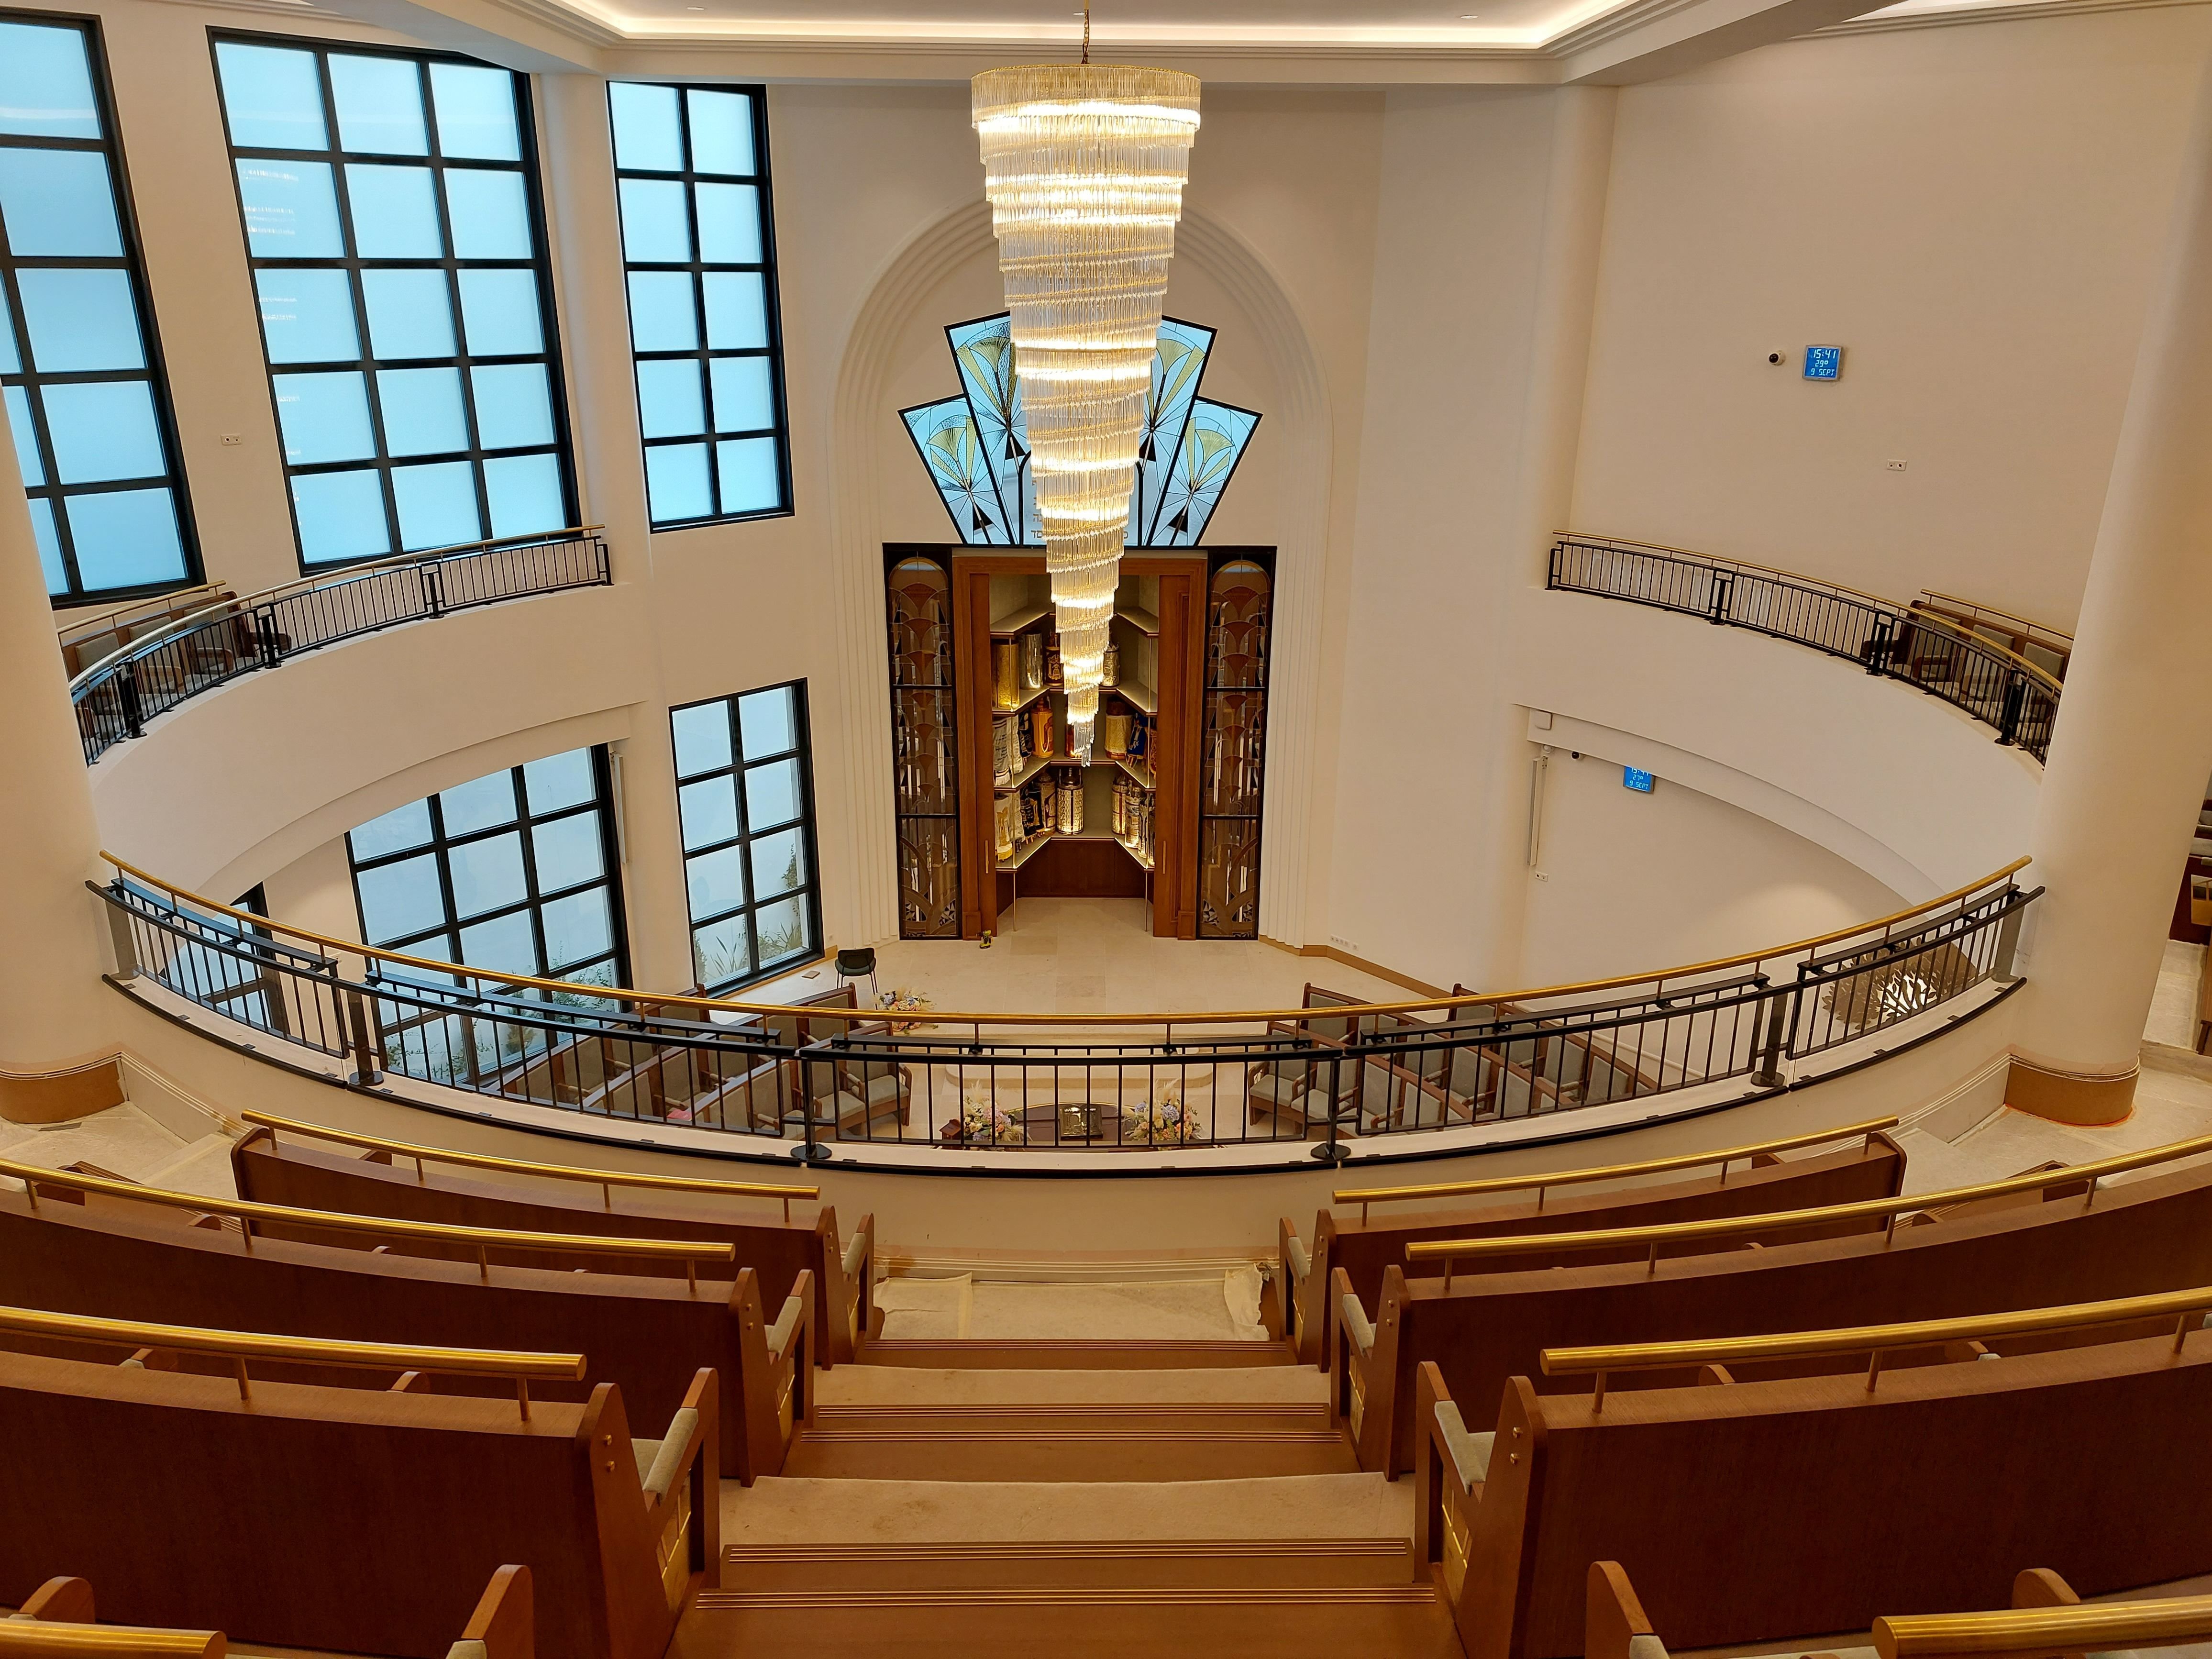 Le centre communautaire de Levallois (Hauts-de-Seine), avec notamment une synagogue de 400 places, accueillera, ce jeudi soir, une conférence intitulée « L’Après 7 octobre : bilan et perspectives ». LP/Anne-Sophie Damecour